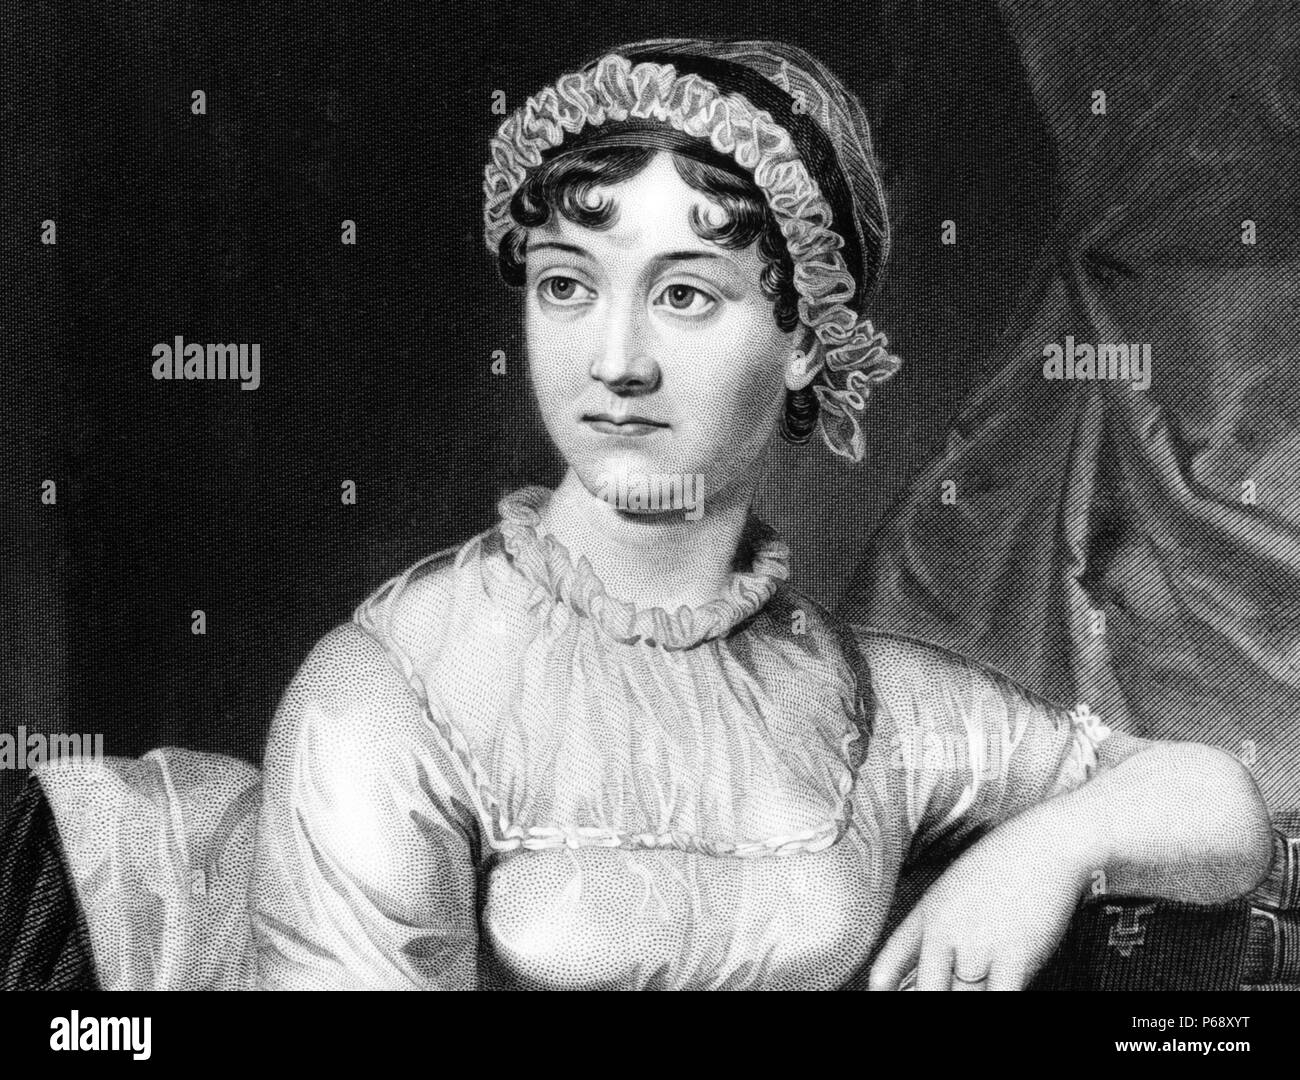 Ritratto di Jane Austen (1775-1817) romanziere inglese, le cui opere o romantica fiction. Datata 1810 Foto Stock